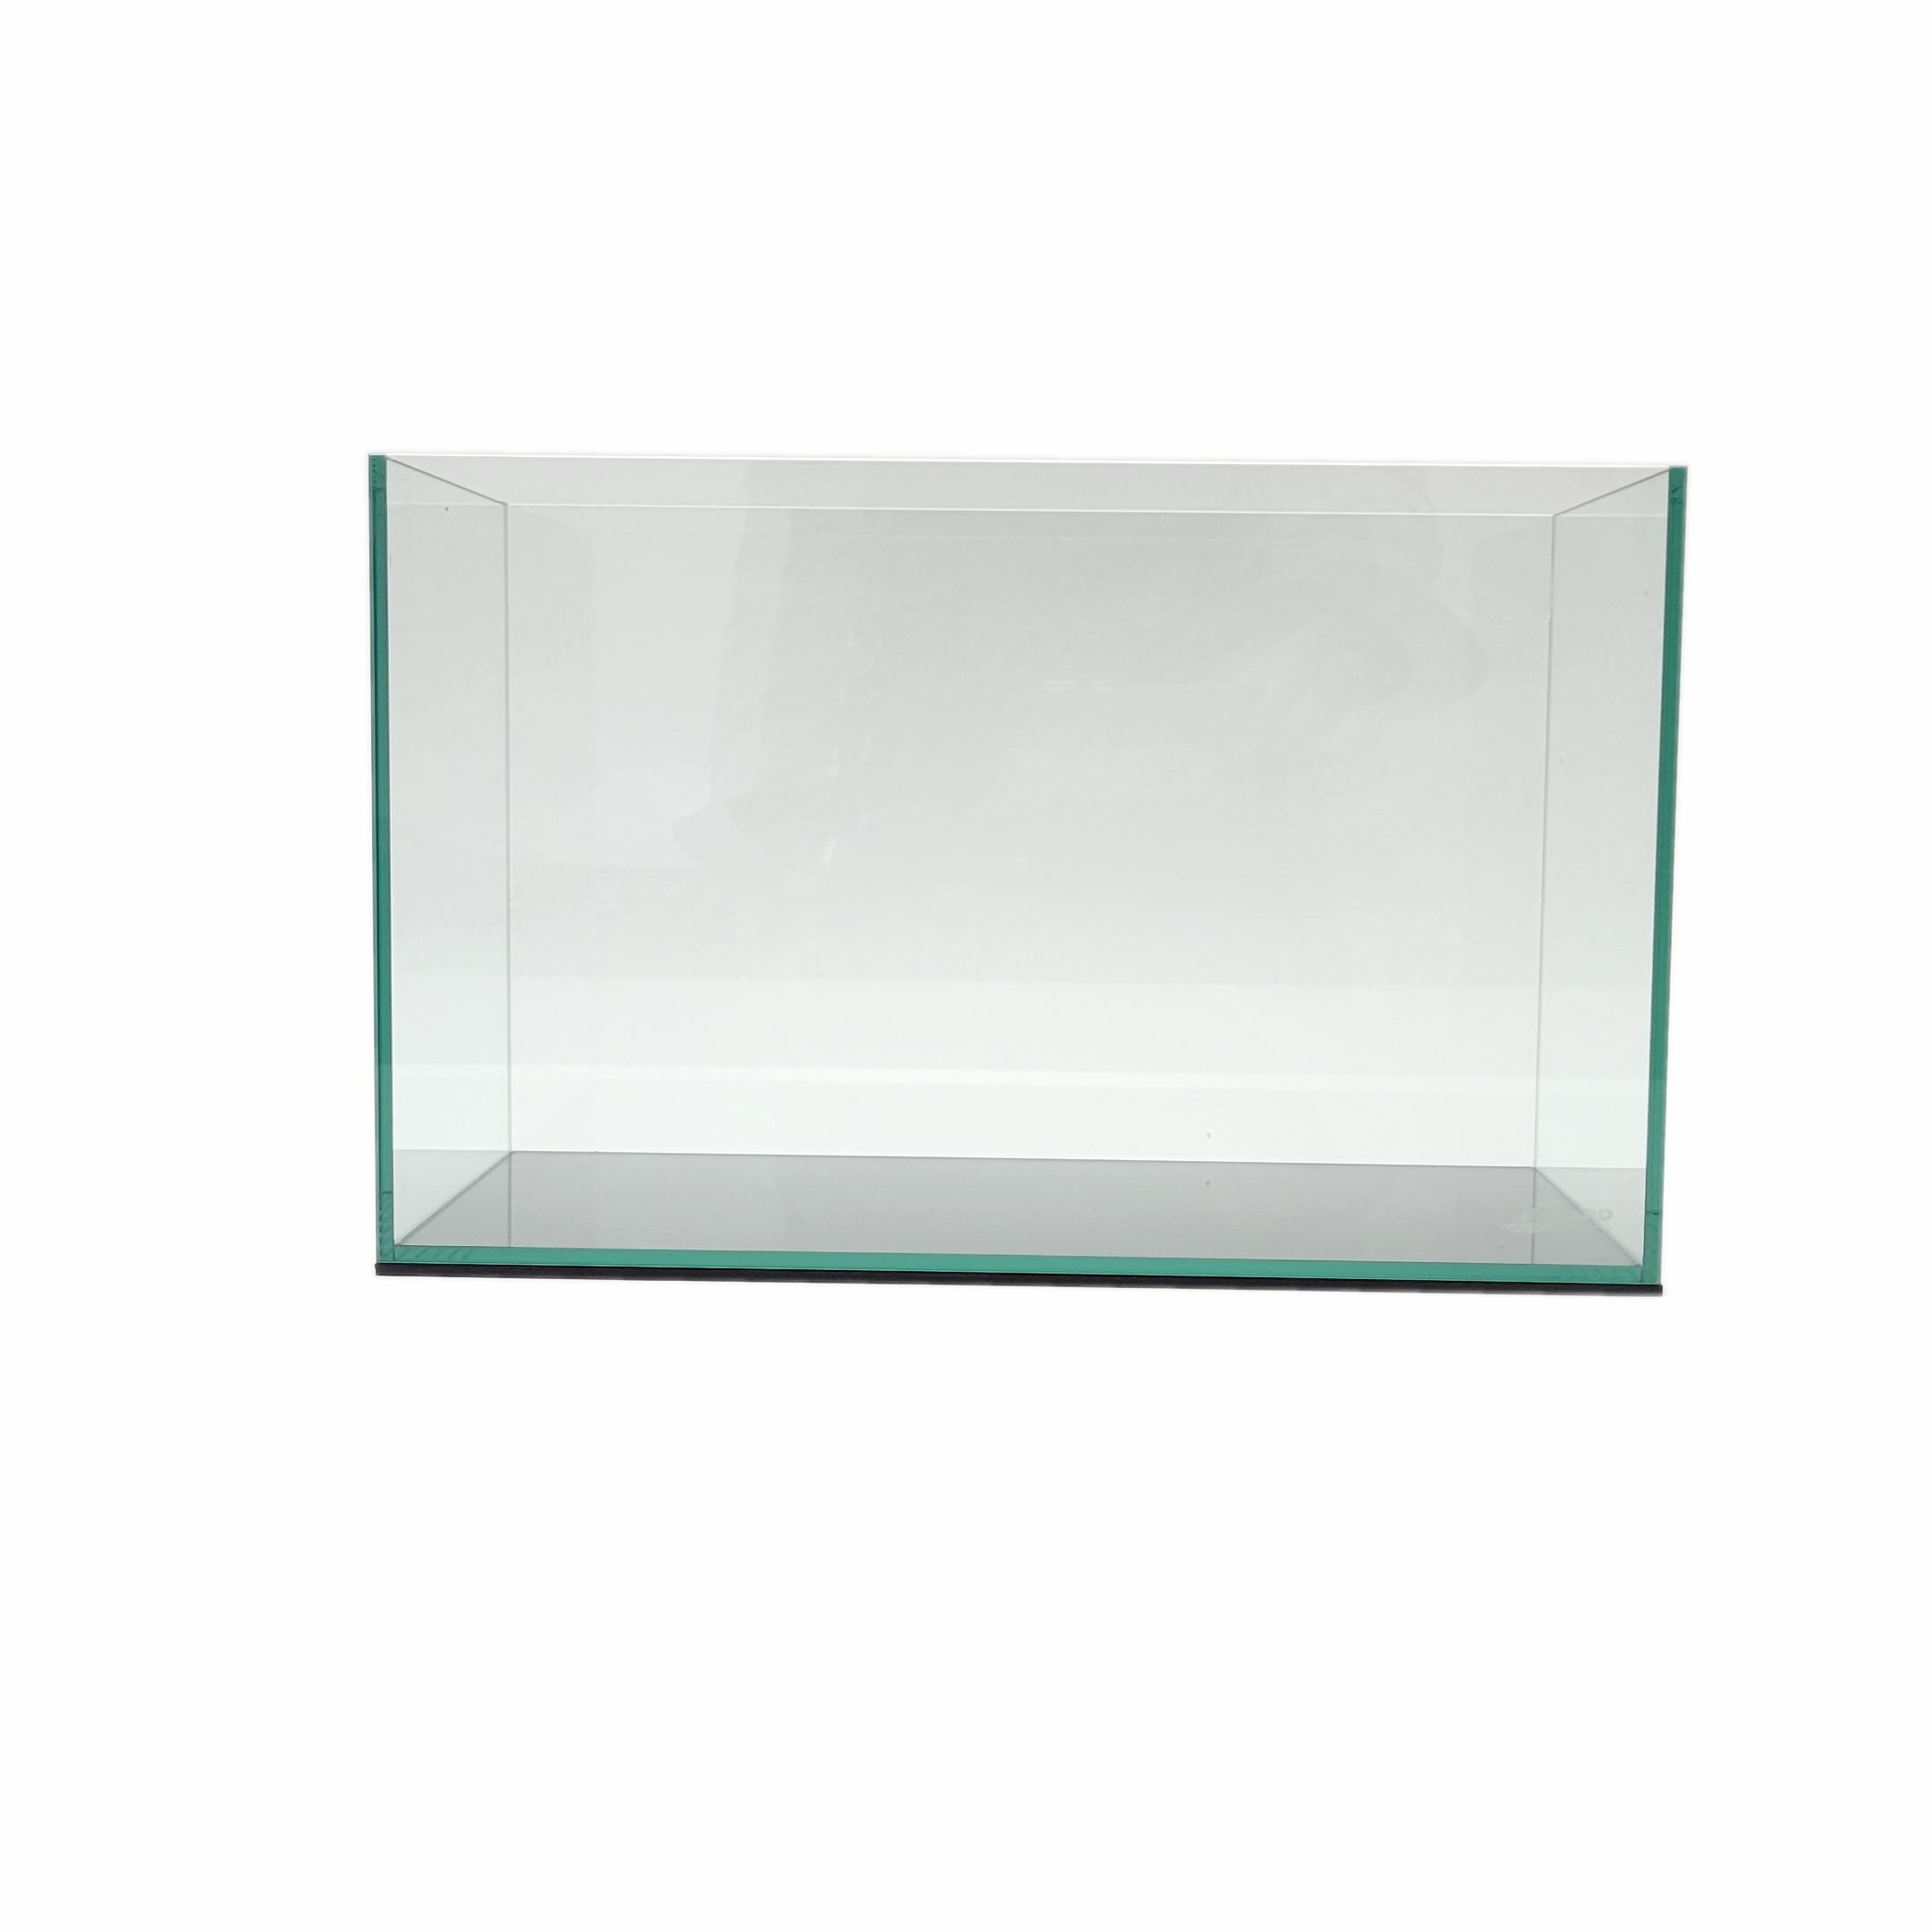 15 Gallon Rimless Clear Glass Aquarium Kit 5mm (23.22x11.02x13.38)